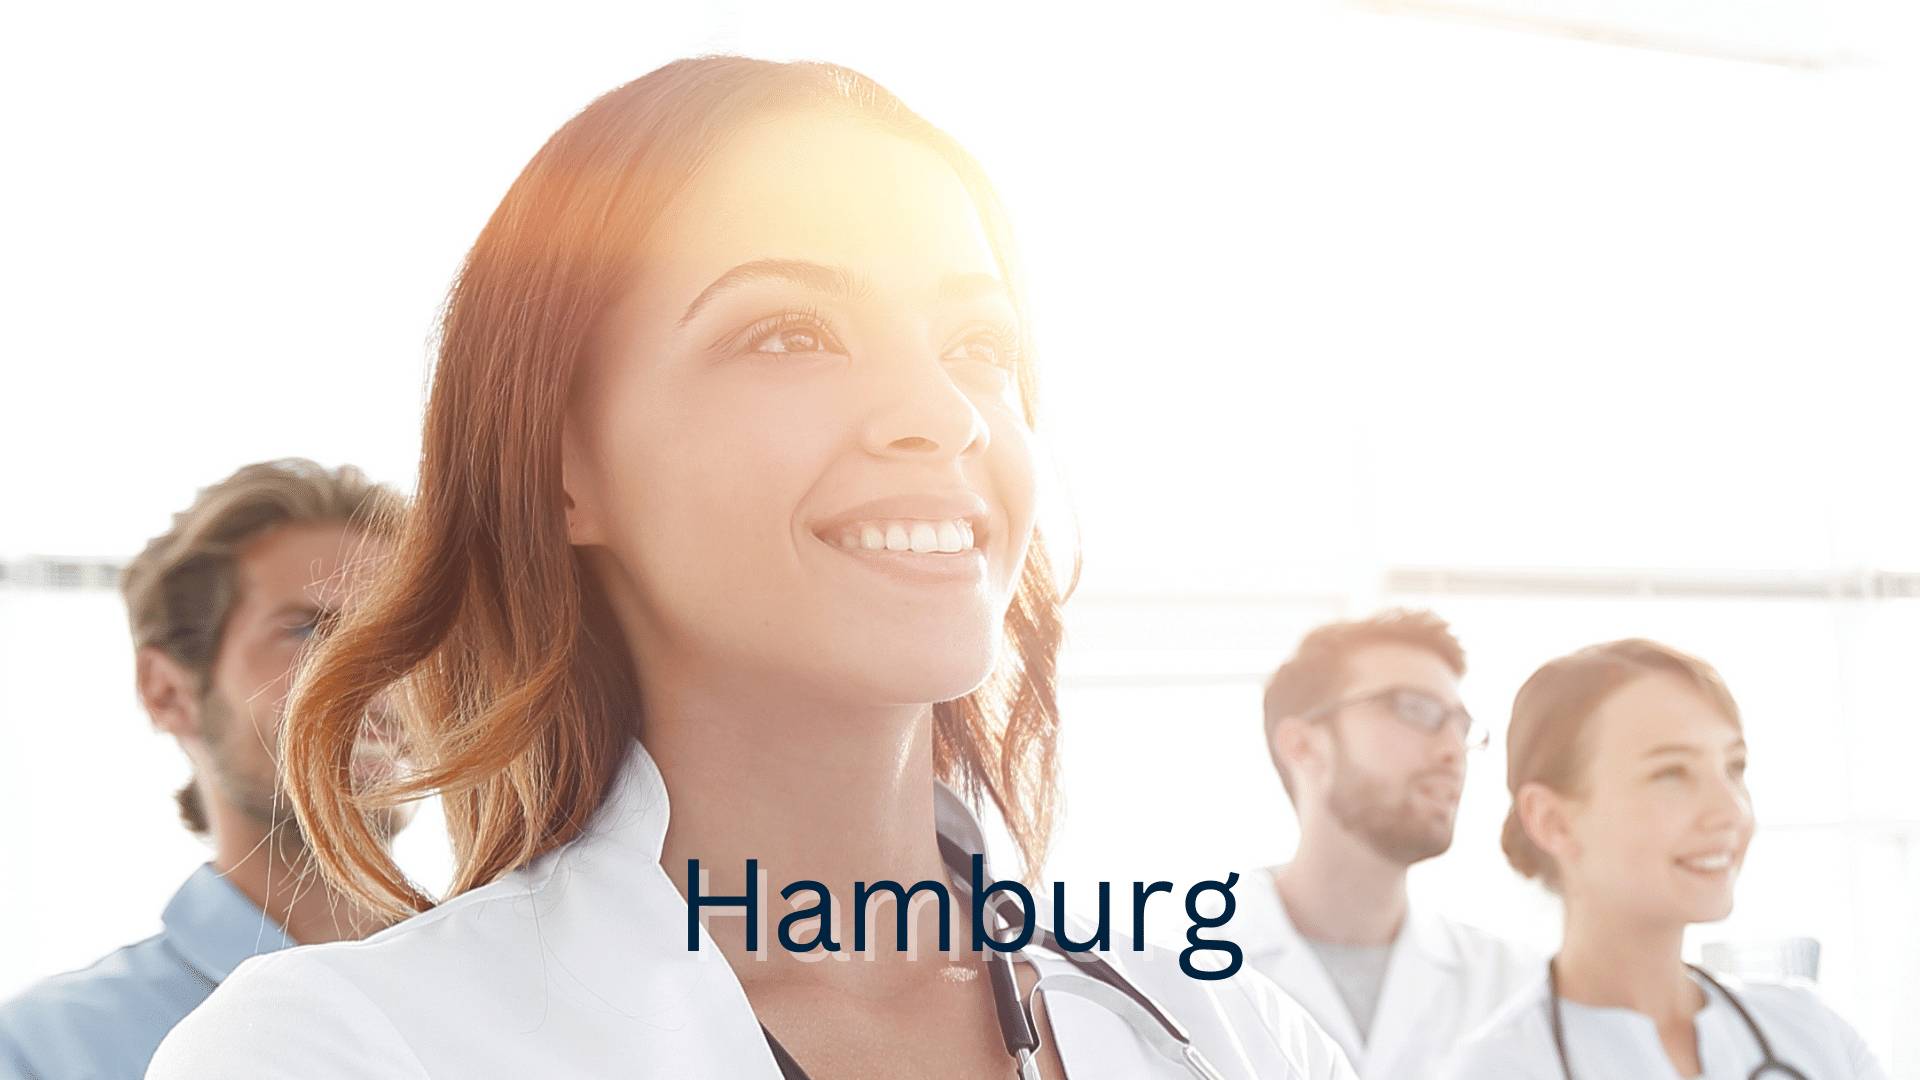 Stockbild mit vier lächelnden Medizinern und Hamburg als Schriftzug 